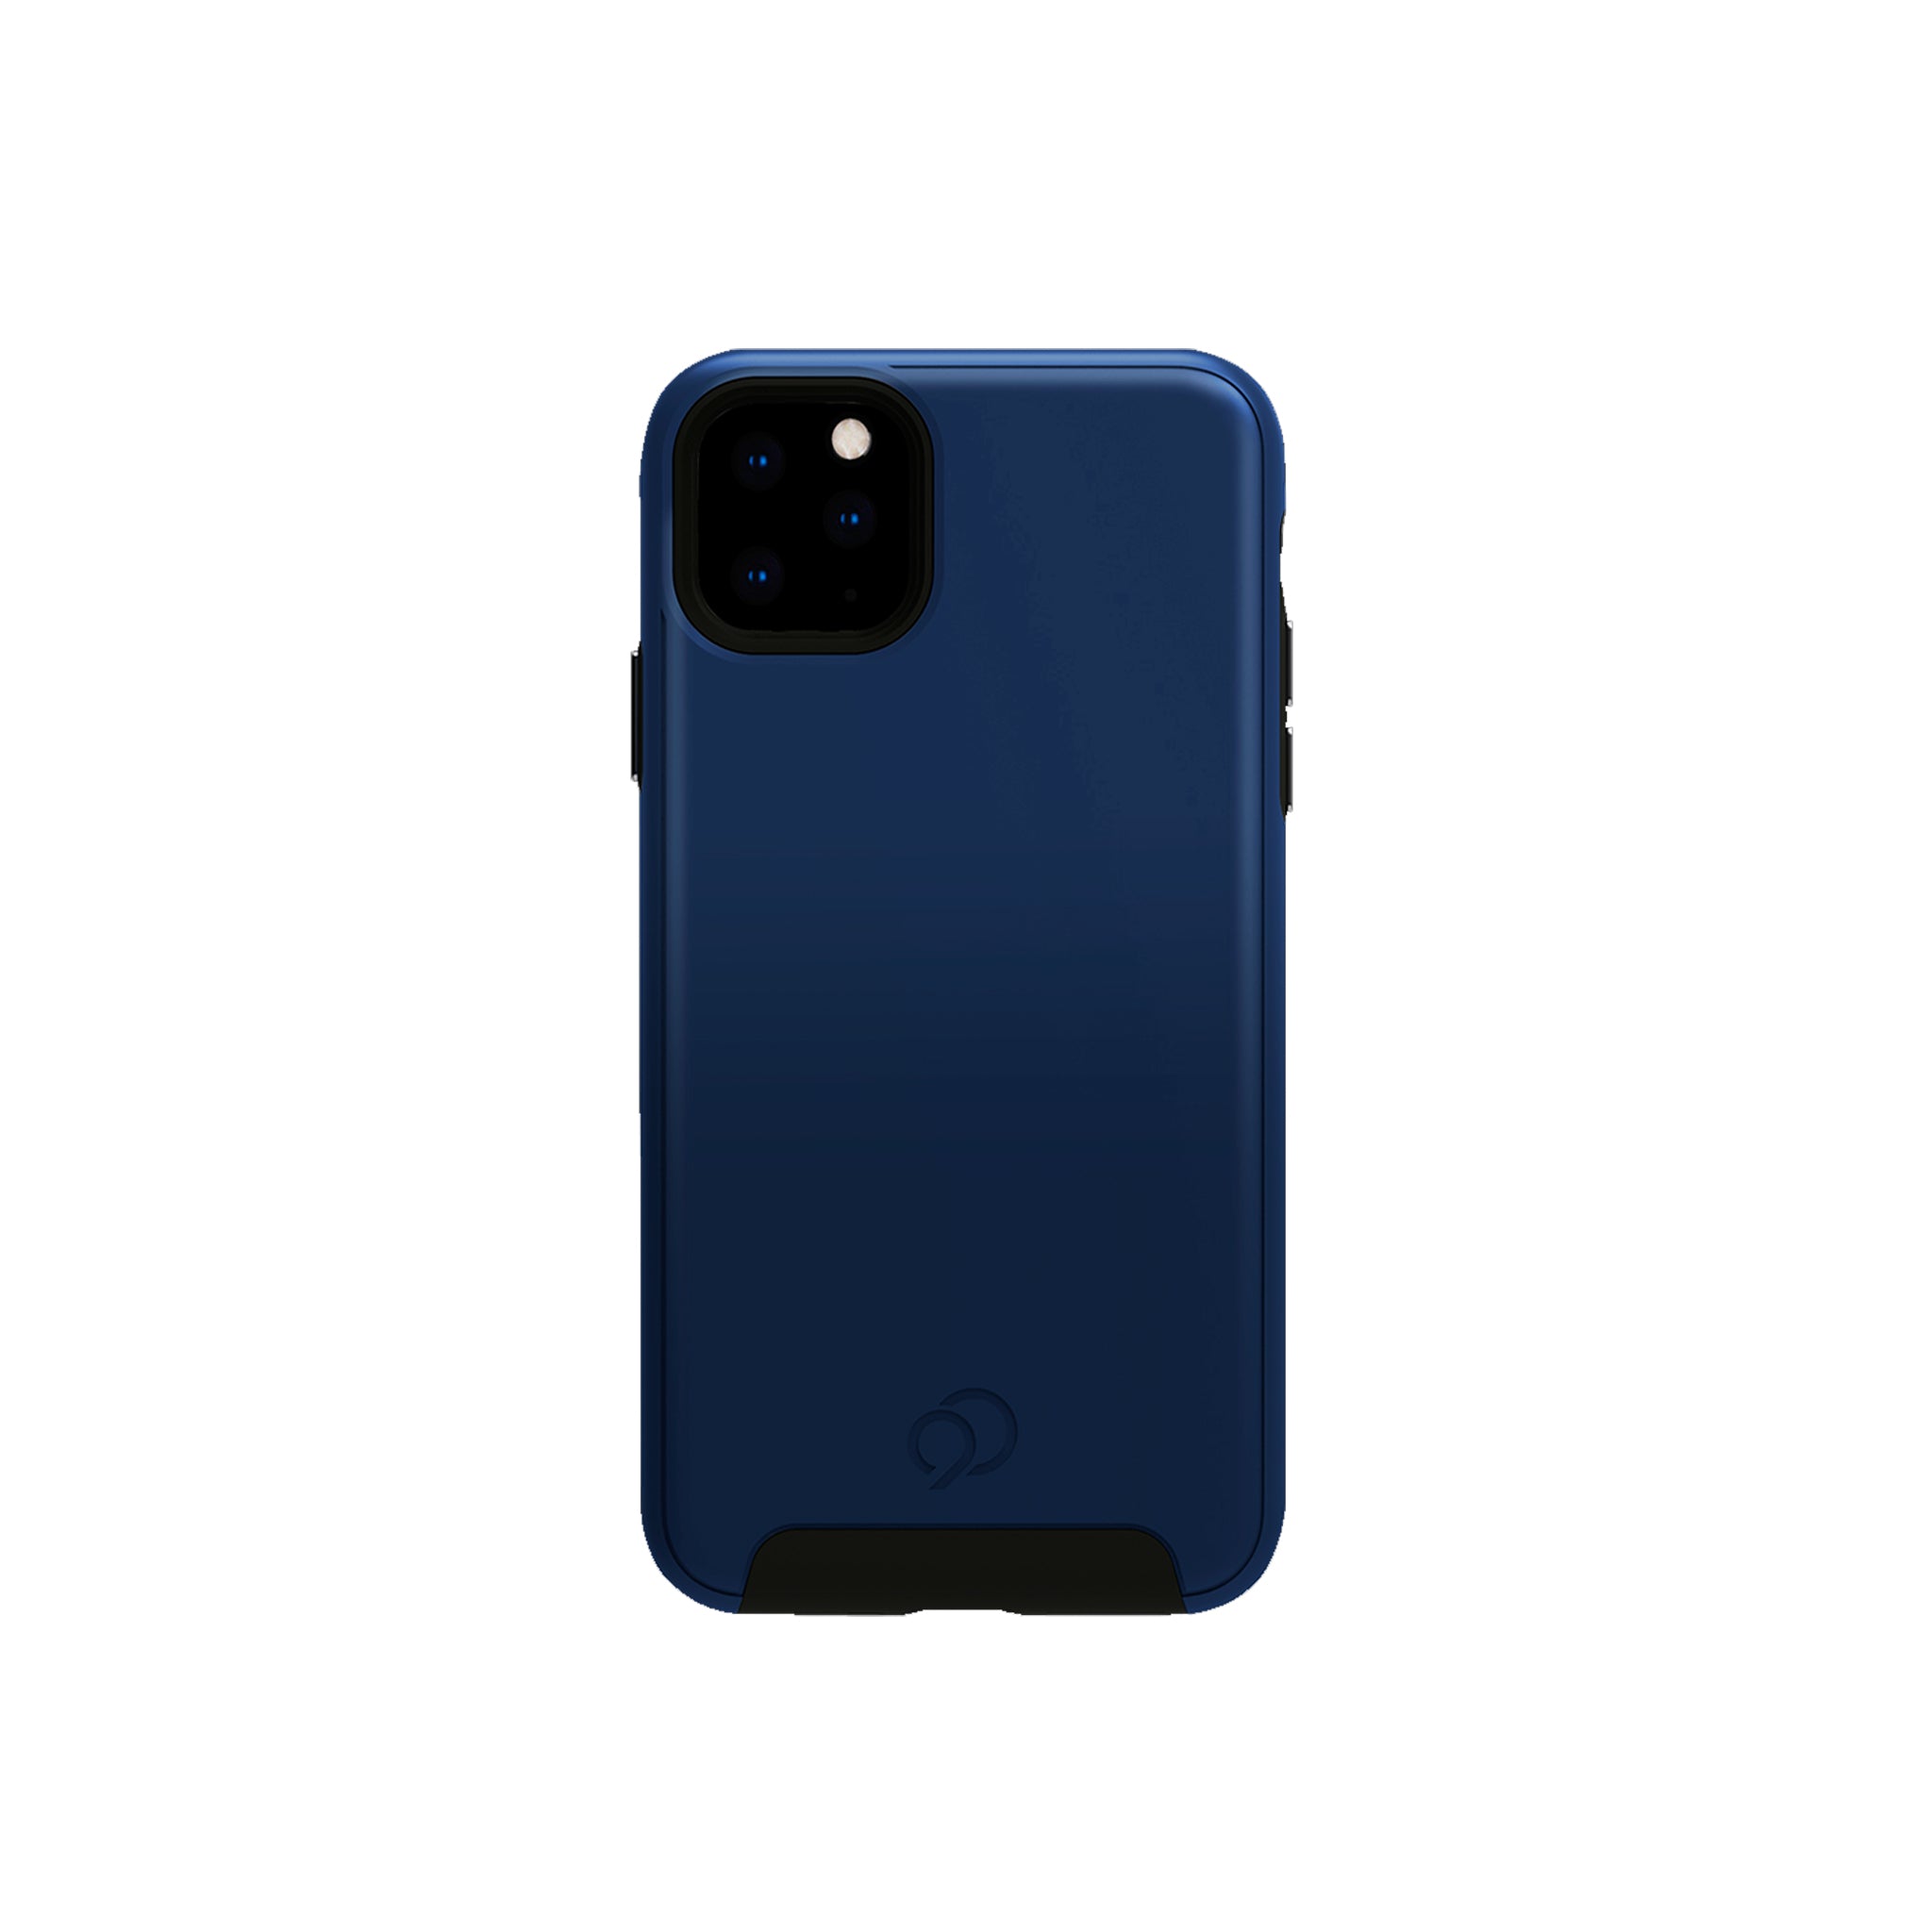 Nimbus9 - Cirrus 2 Case For Apple Iphone 11 Pro Max - Midnight Blue